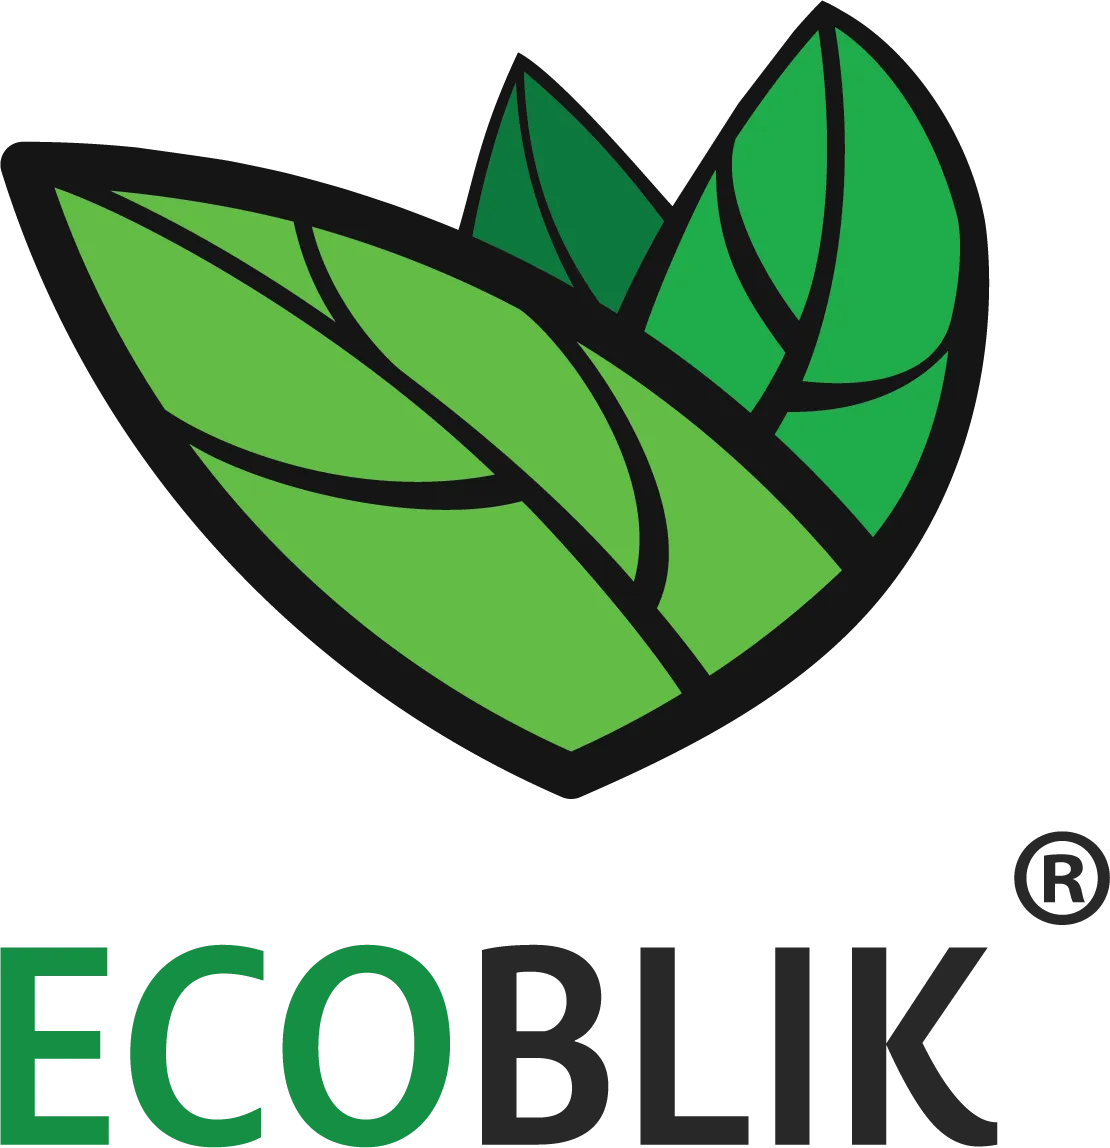 Ecoblik